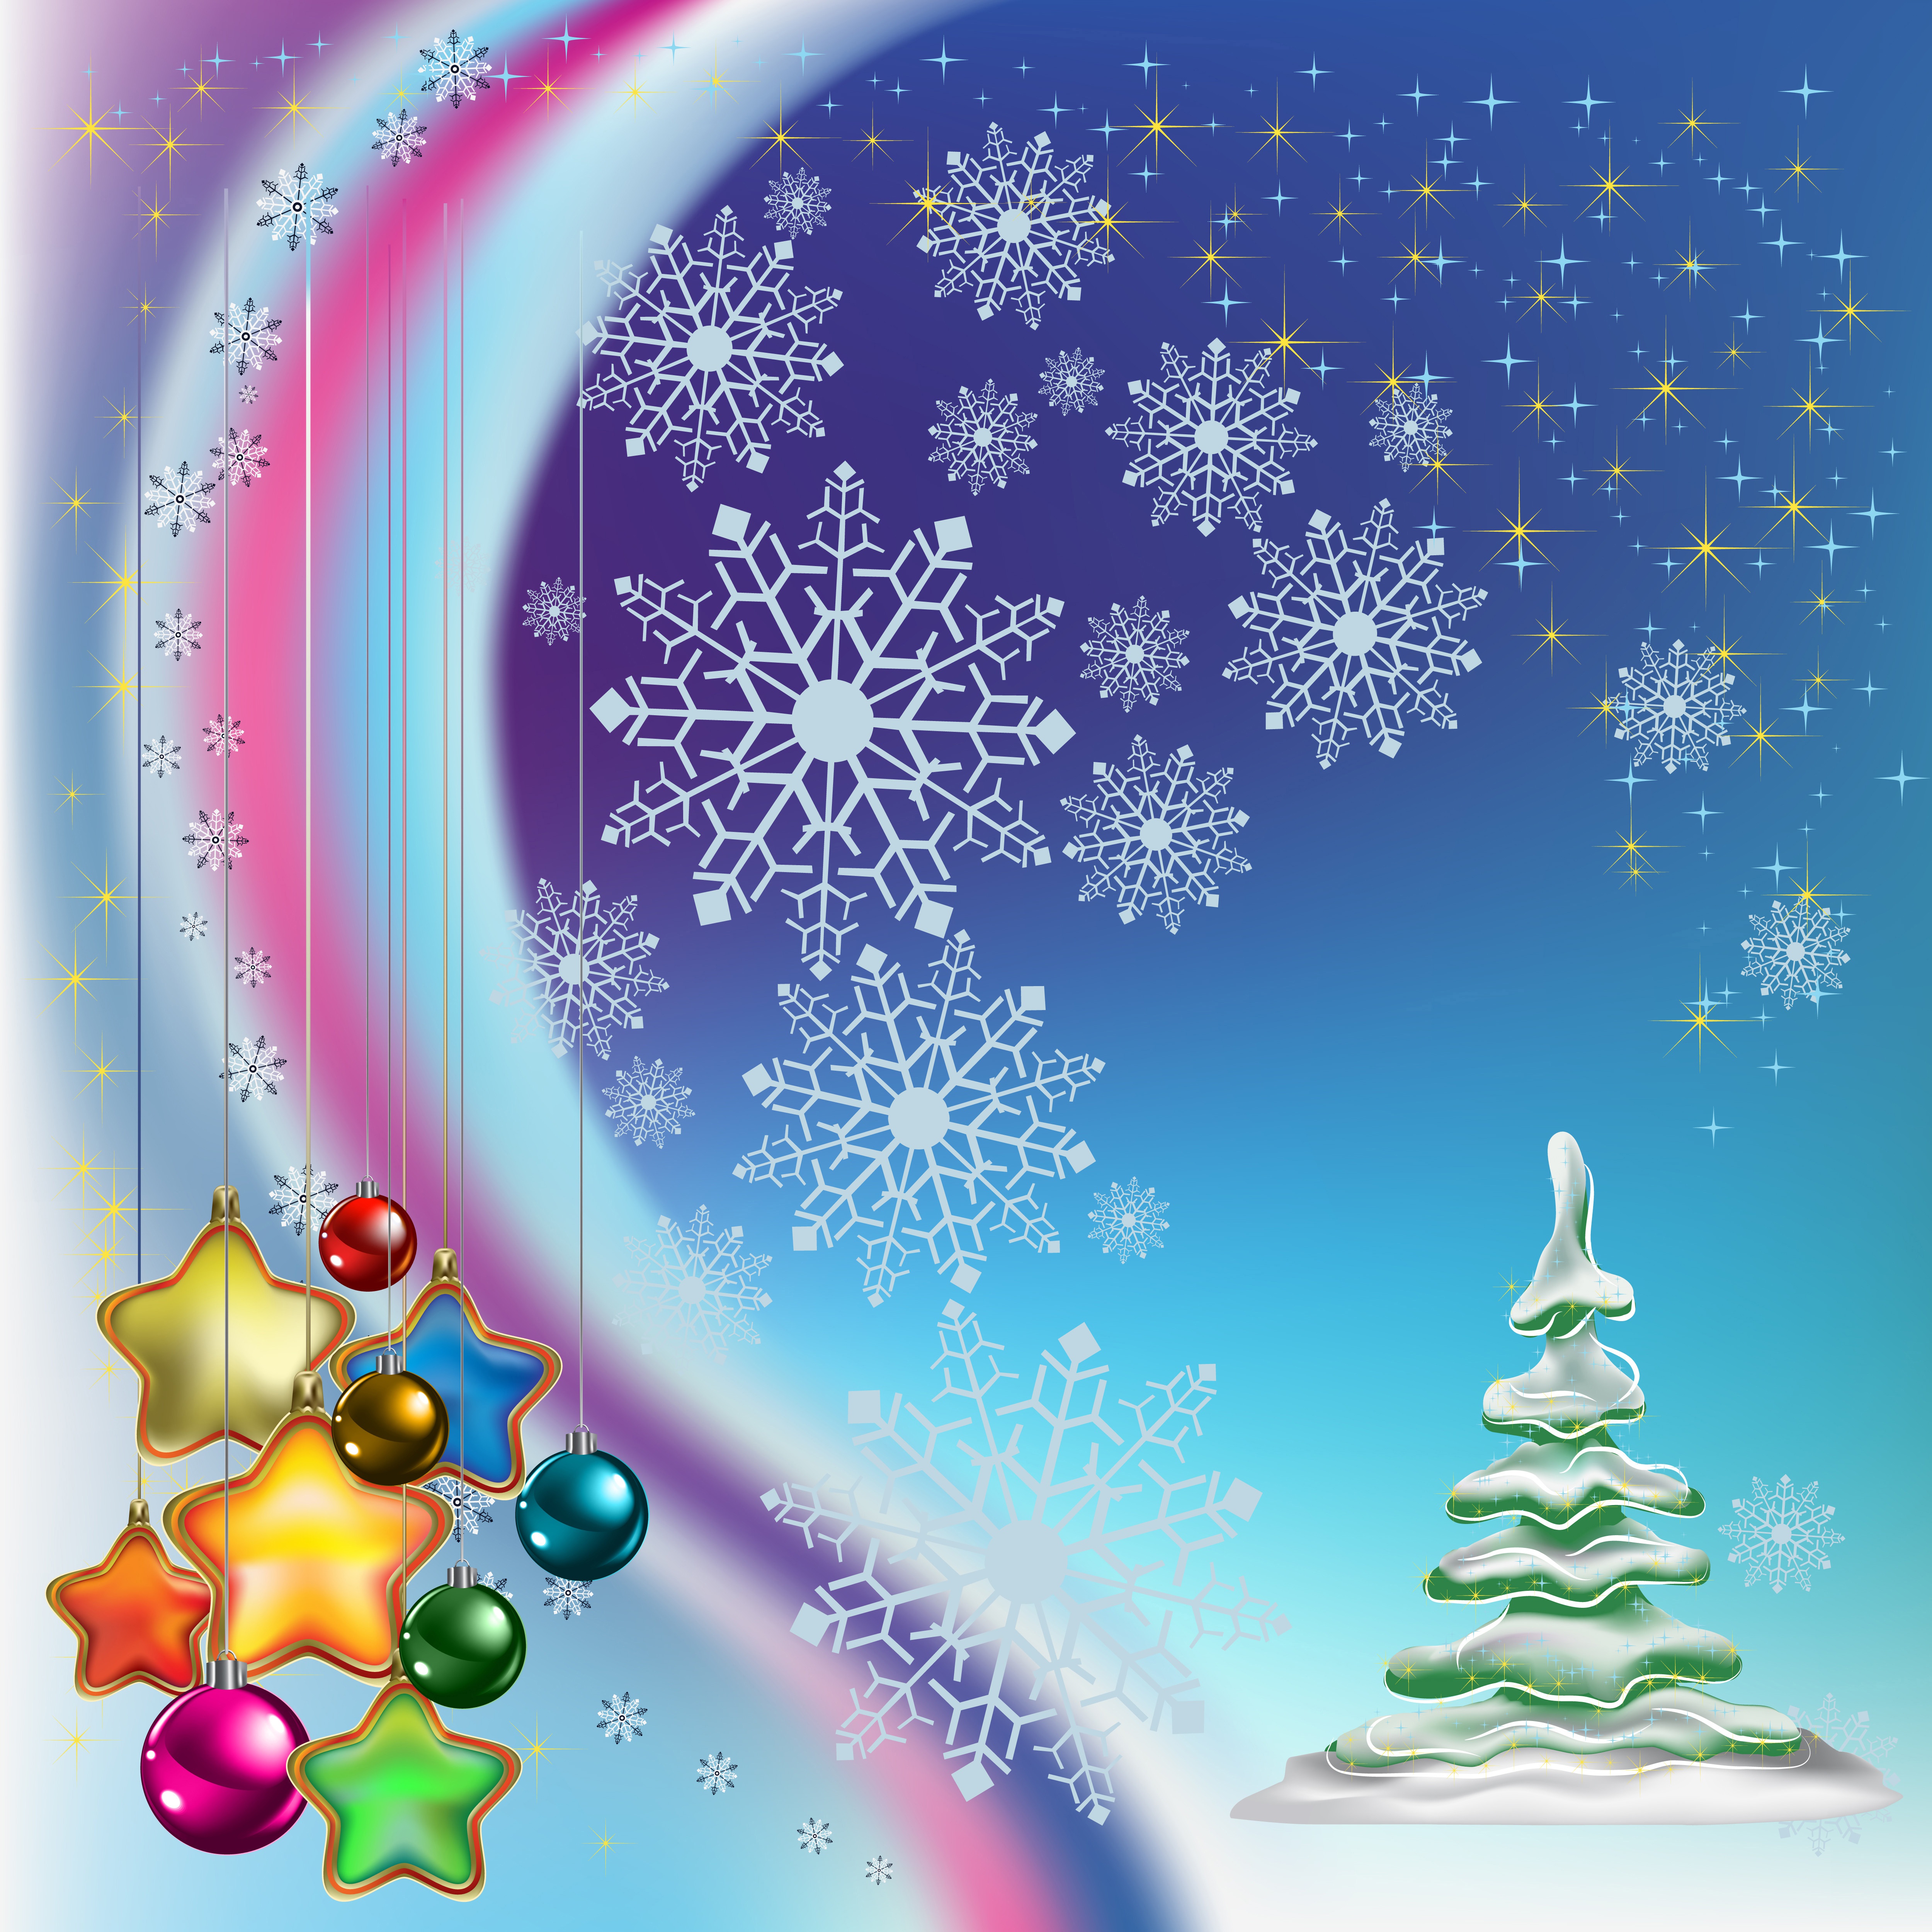 5000 X - Christmas Wallpaper Clip Art , HD Wallpaper & Backgrounds